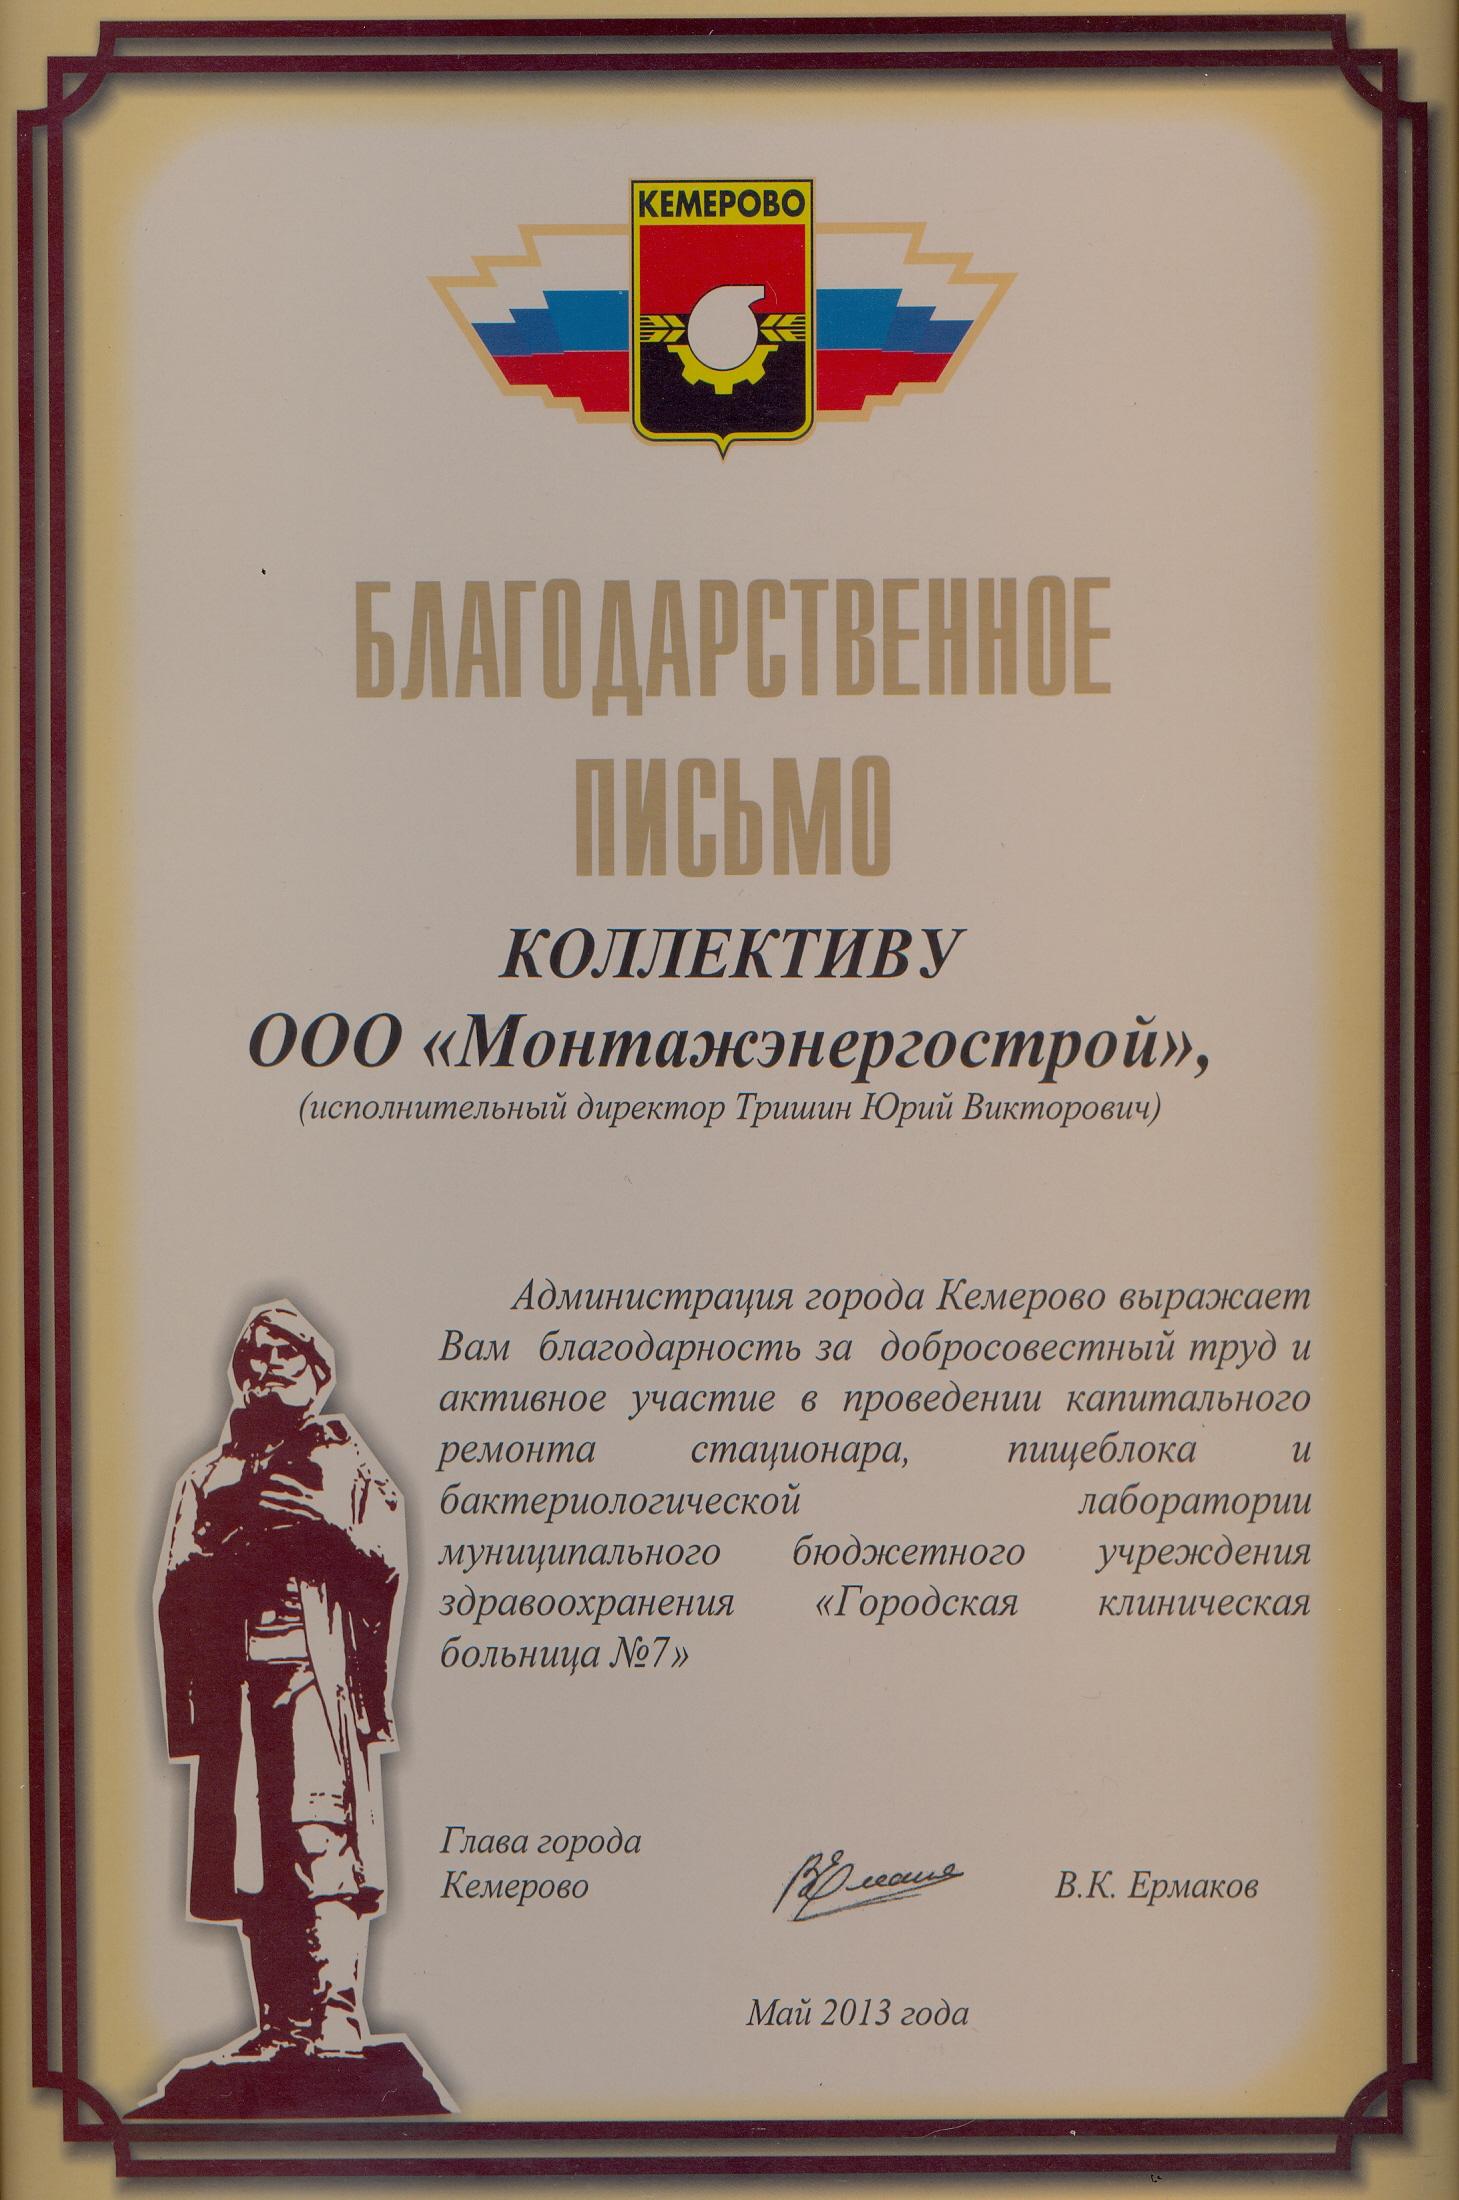 Благодарственное письмо от Администрации г. Кемерово (май 2013 г.)